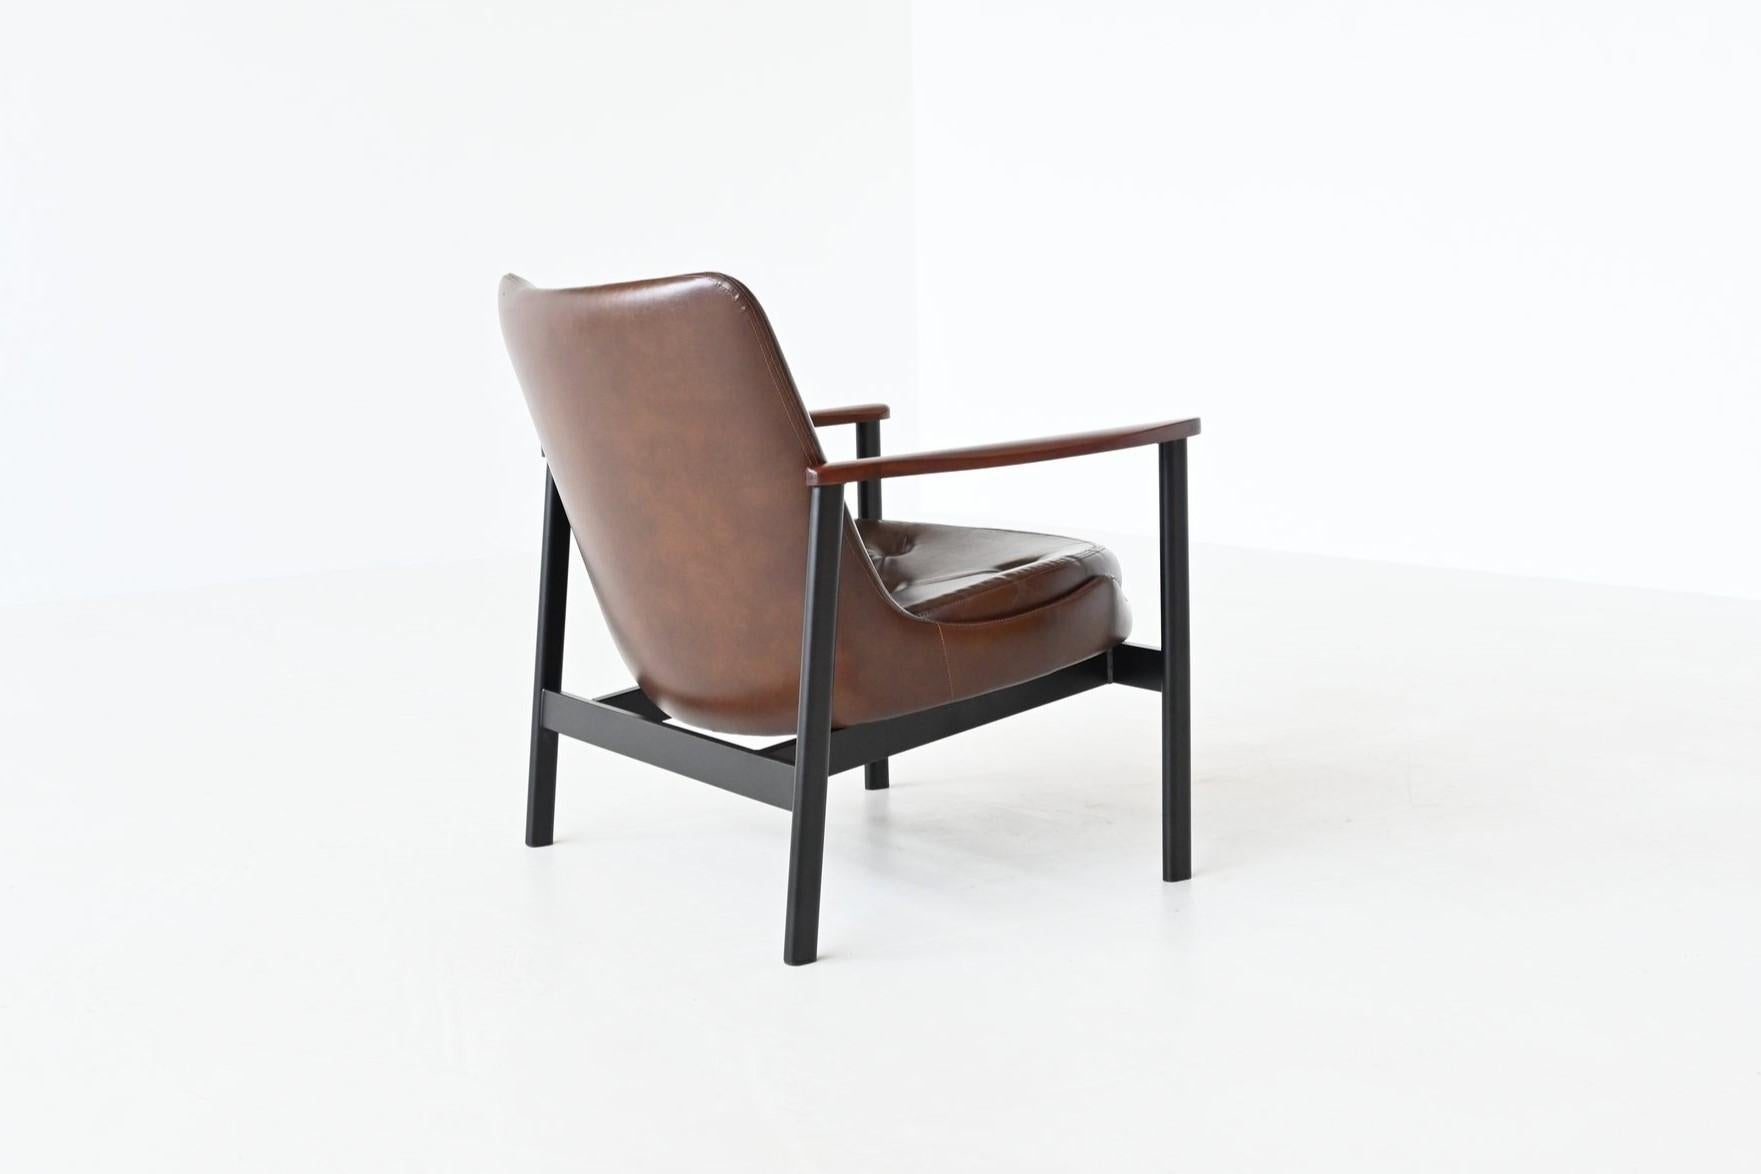 Formschöner Sessel, entworfen von IB Kofod Larsen für Fröscher KG, Dänemark 1972. Dieser Stuhl ist in seiner Charakteristik dem ikonischen ''Elizabeth'' Stuhl sehr ähnlich, aber dieser Entwurf hat rundere Formen und dickere Kissen. Er hatte ein